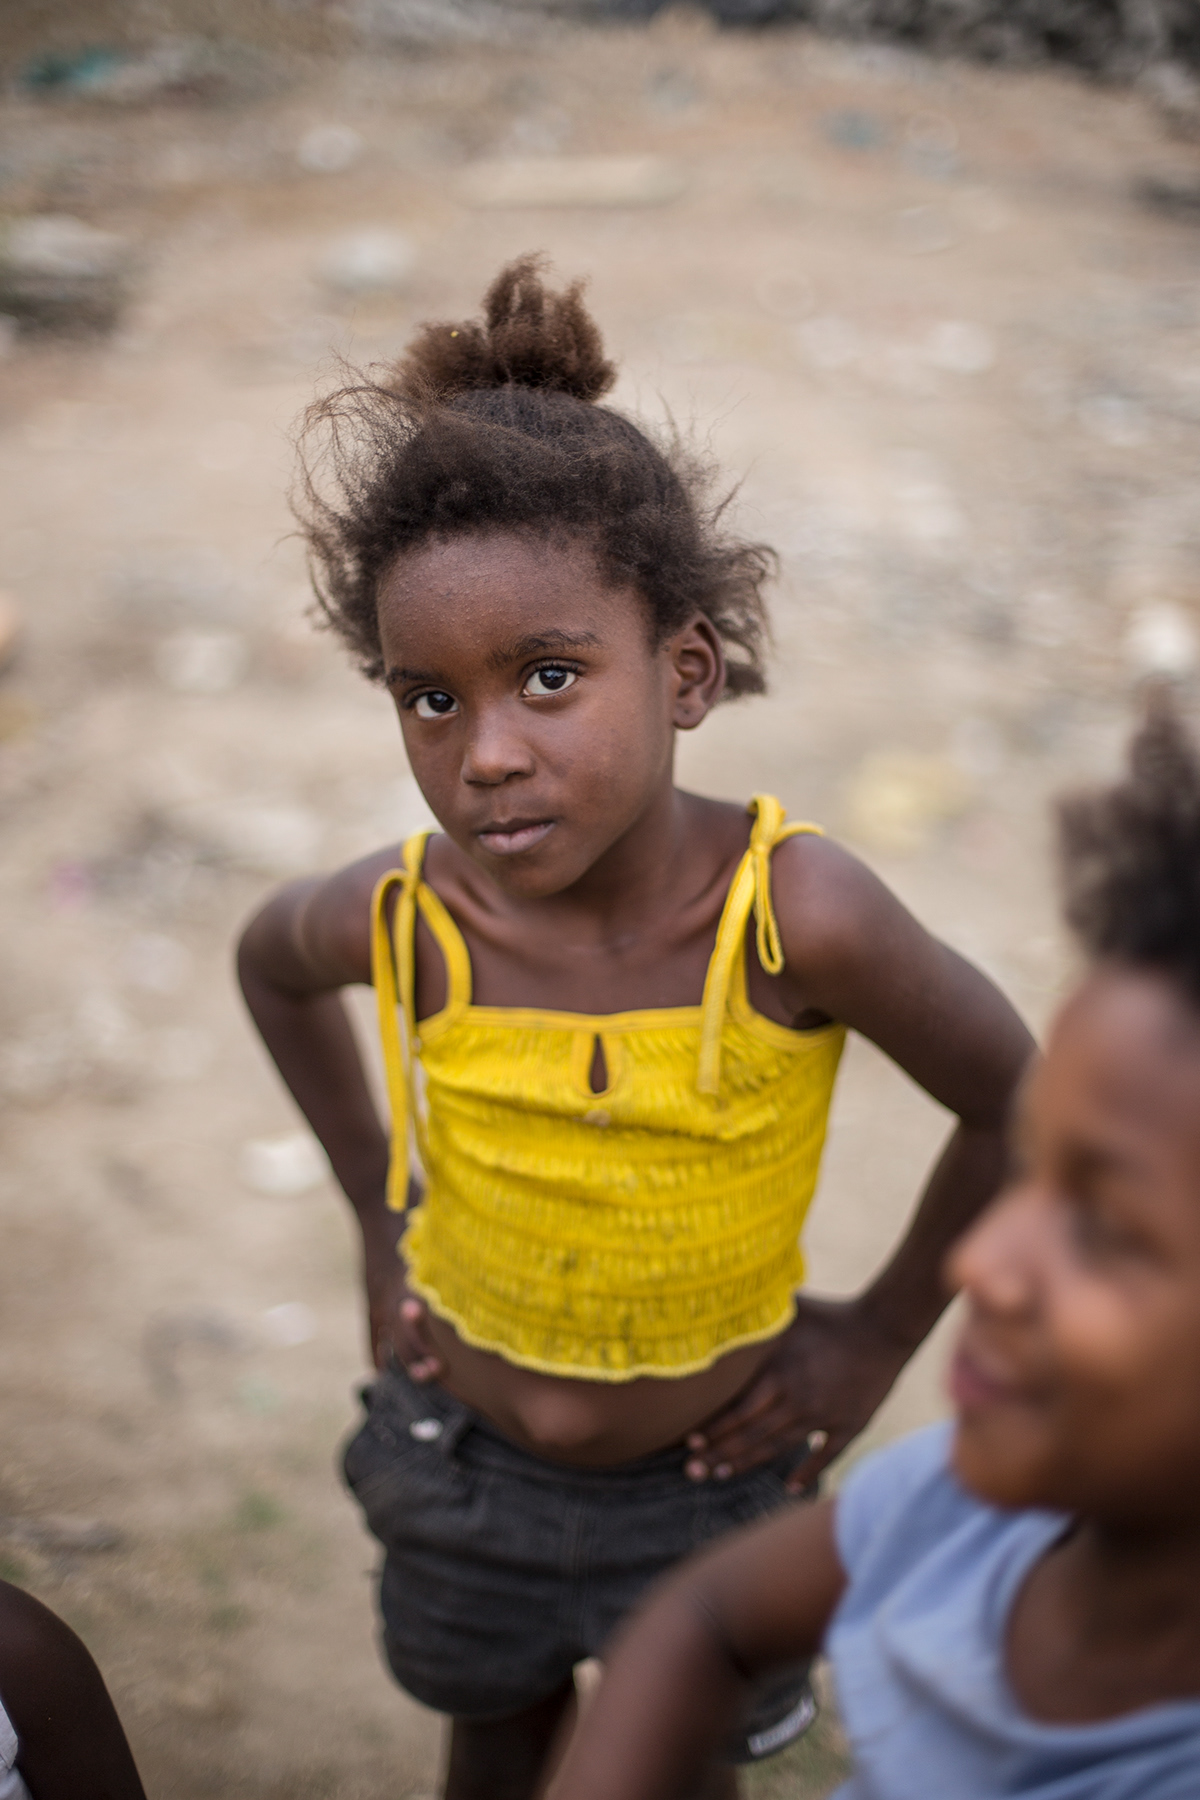 Brasil kids Poverty reallity Landscape city